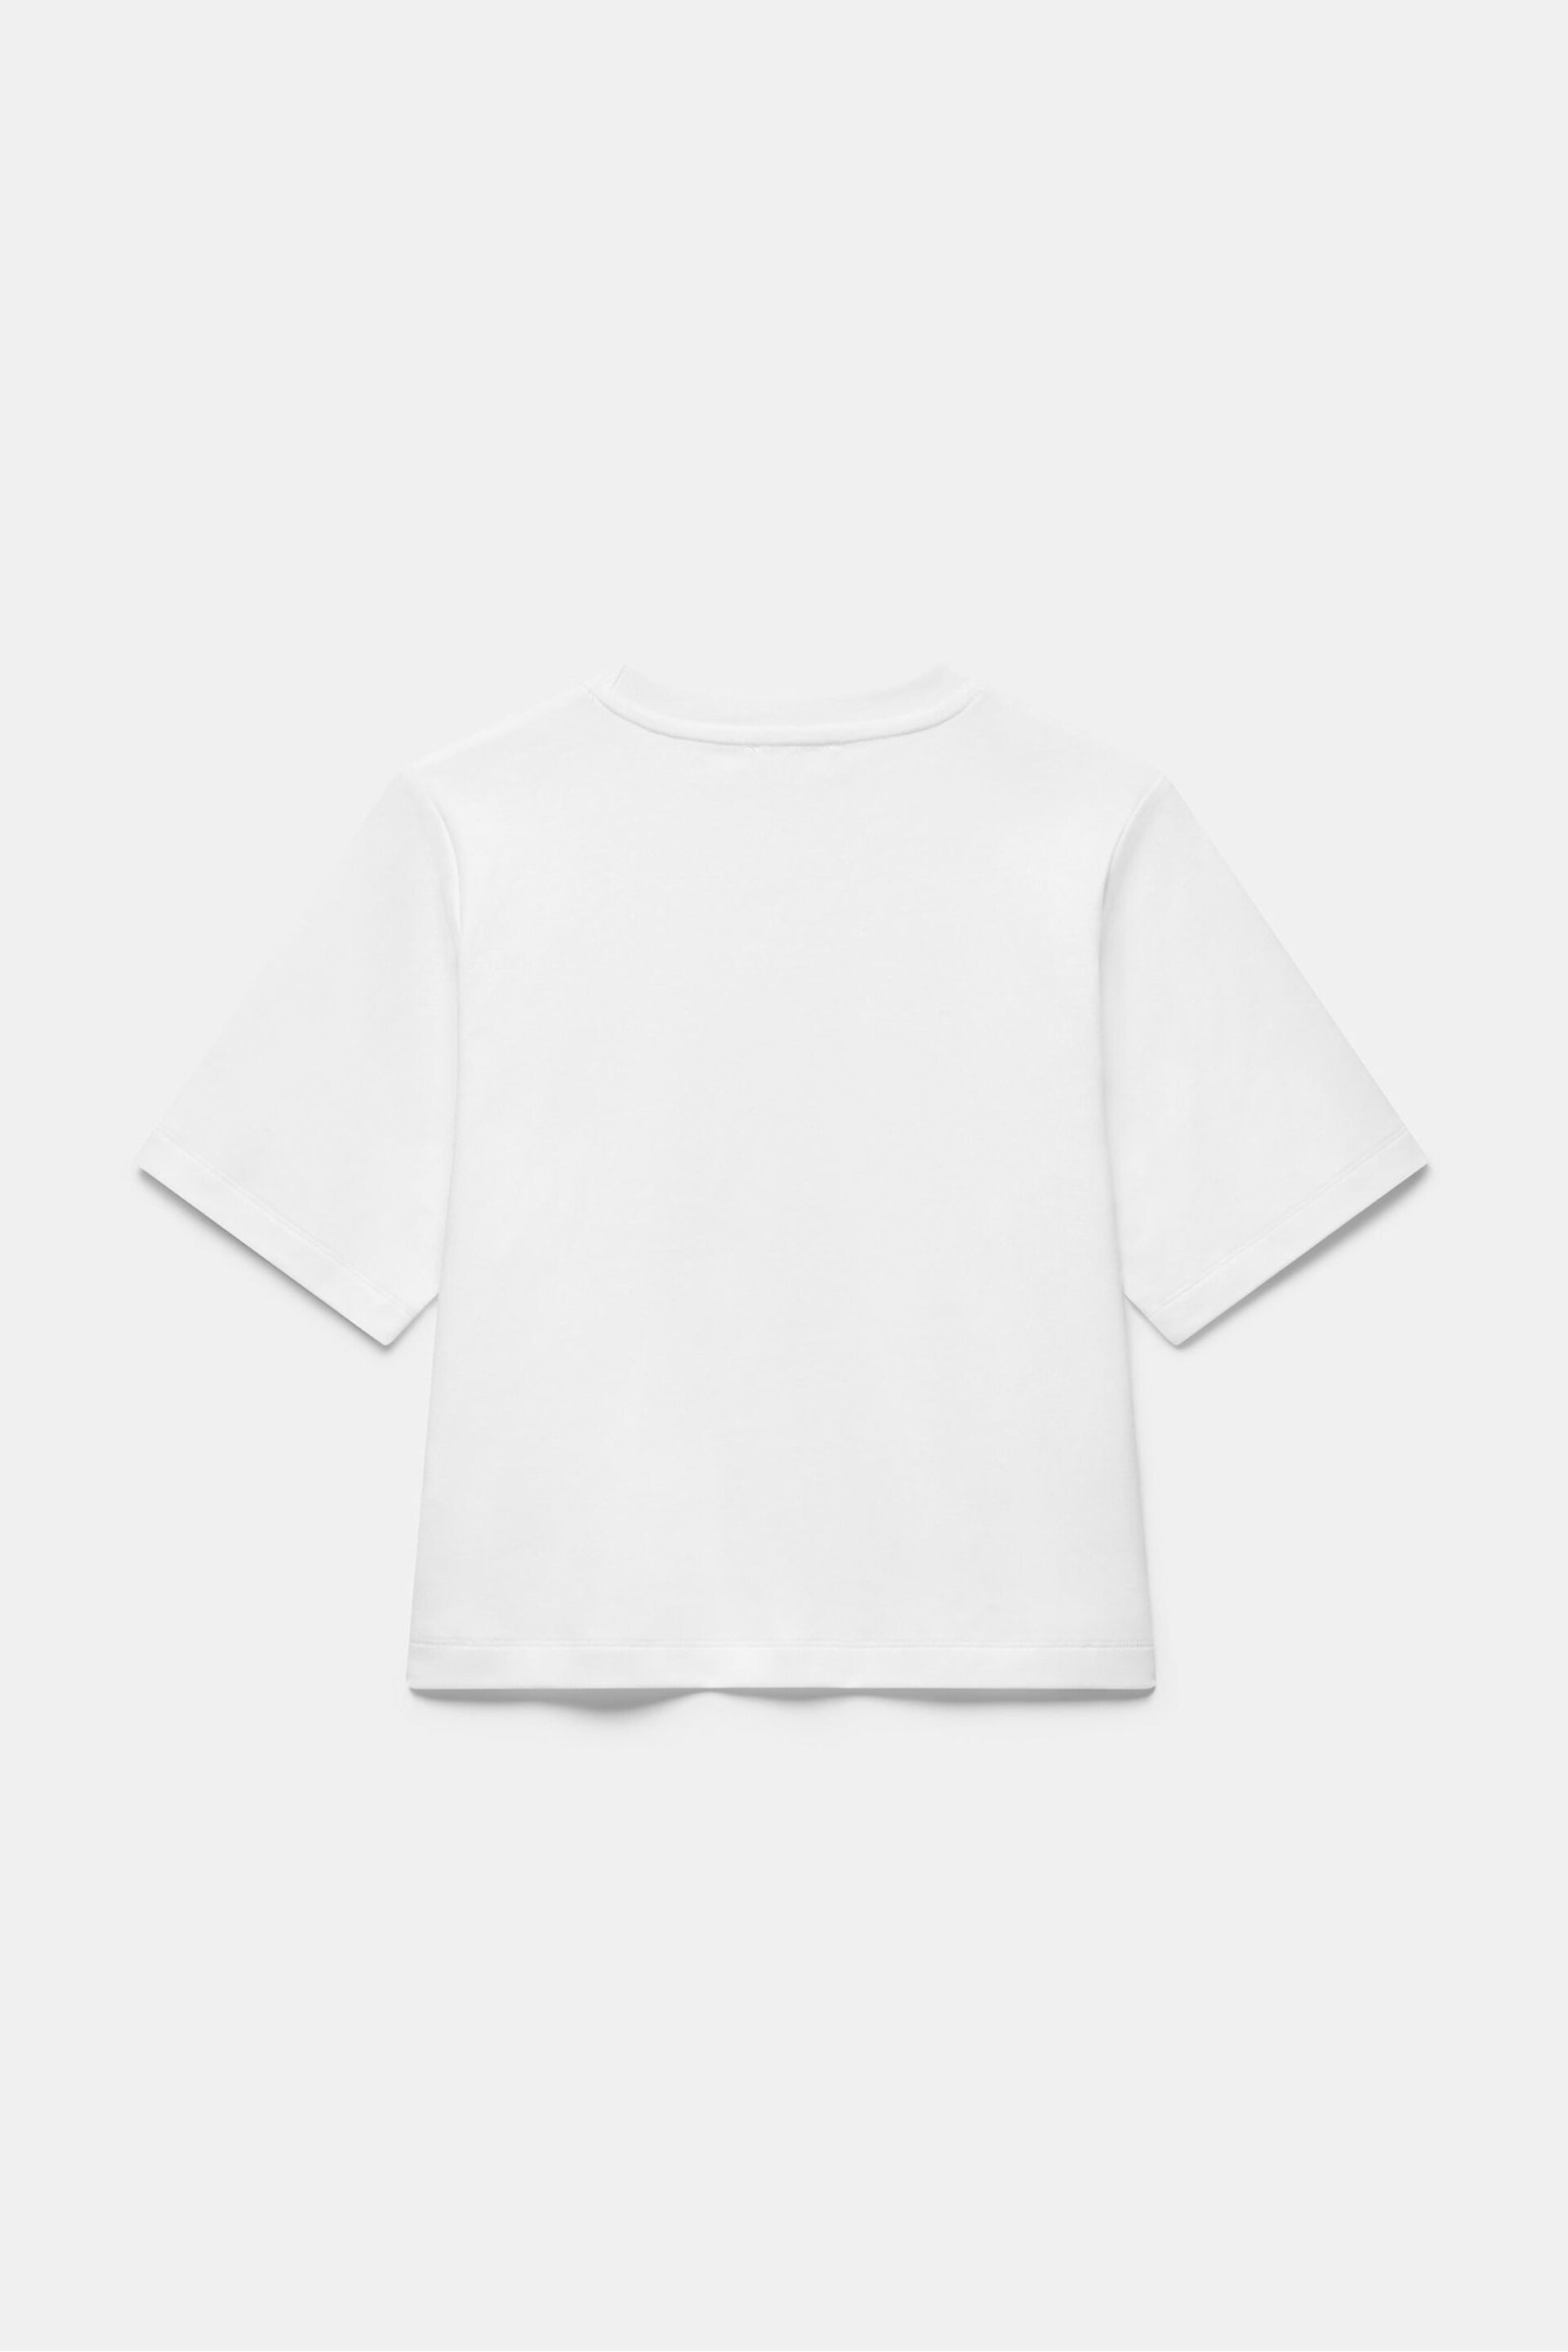 Mint Velvet White Ultimate Cotton T-Shirt - Image 4 of 4